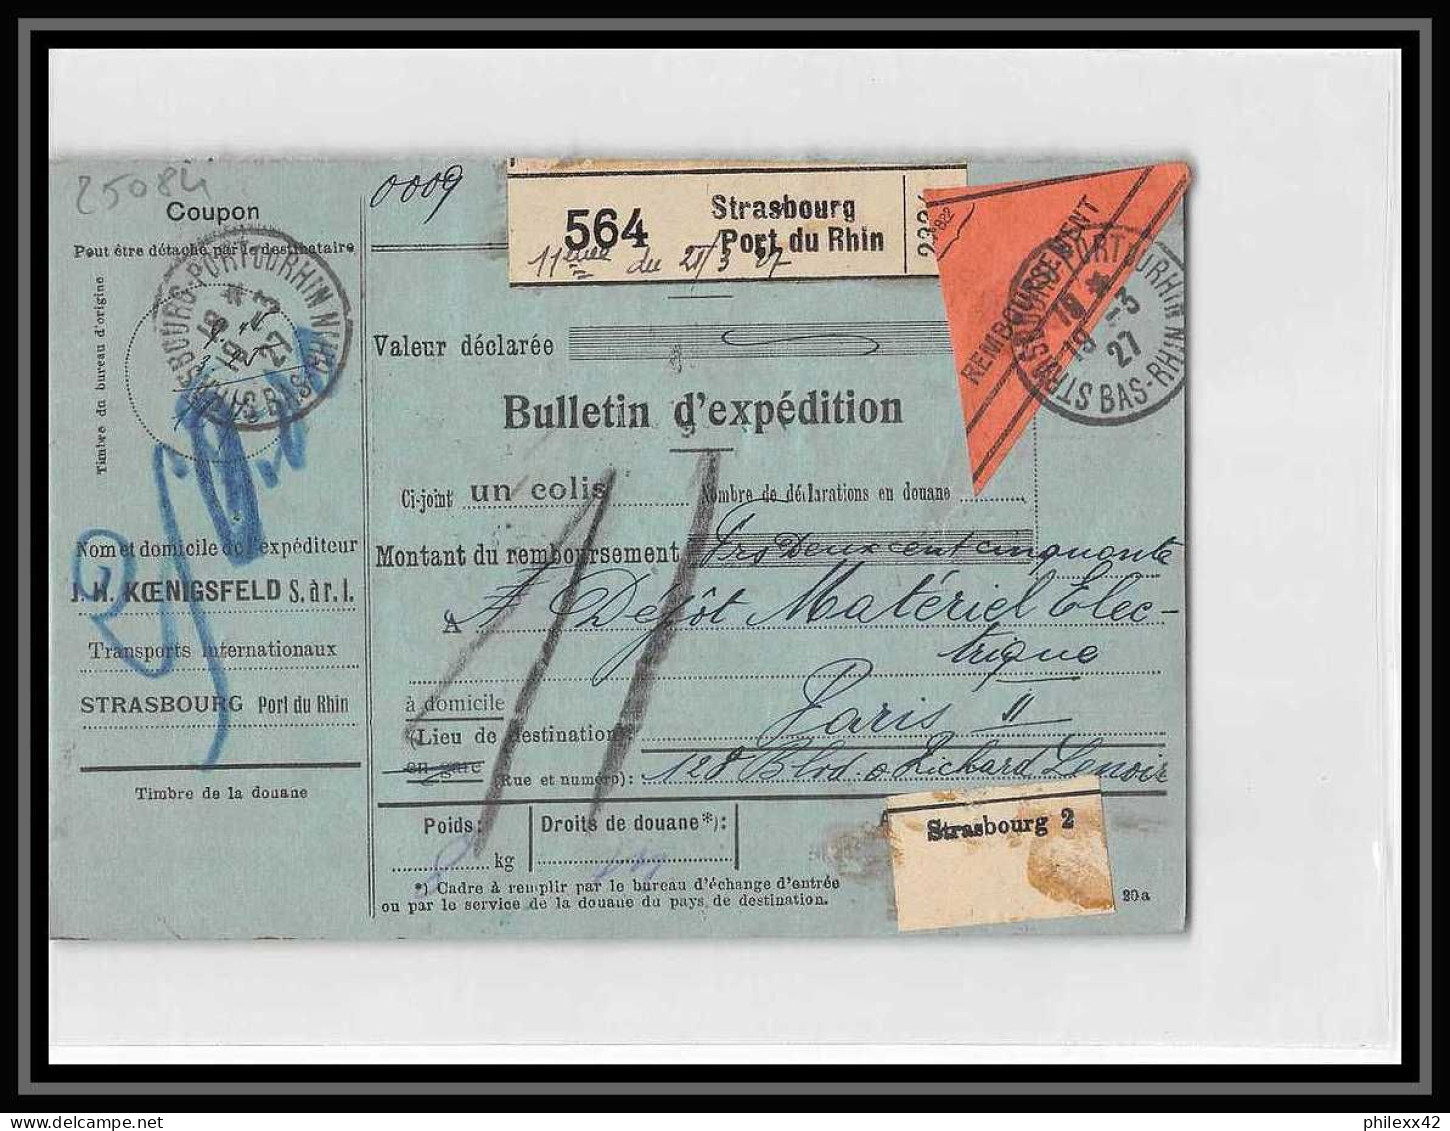 25084 Bulletin D'expédition France Colis Postaux Fiscal Haut Rhin Strasbourg 1927 Merson 145 Contre Remboursement - Covers & Documents